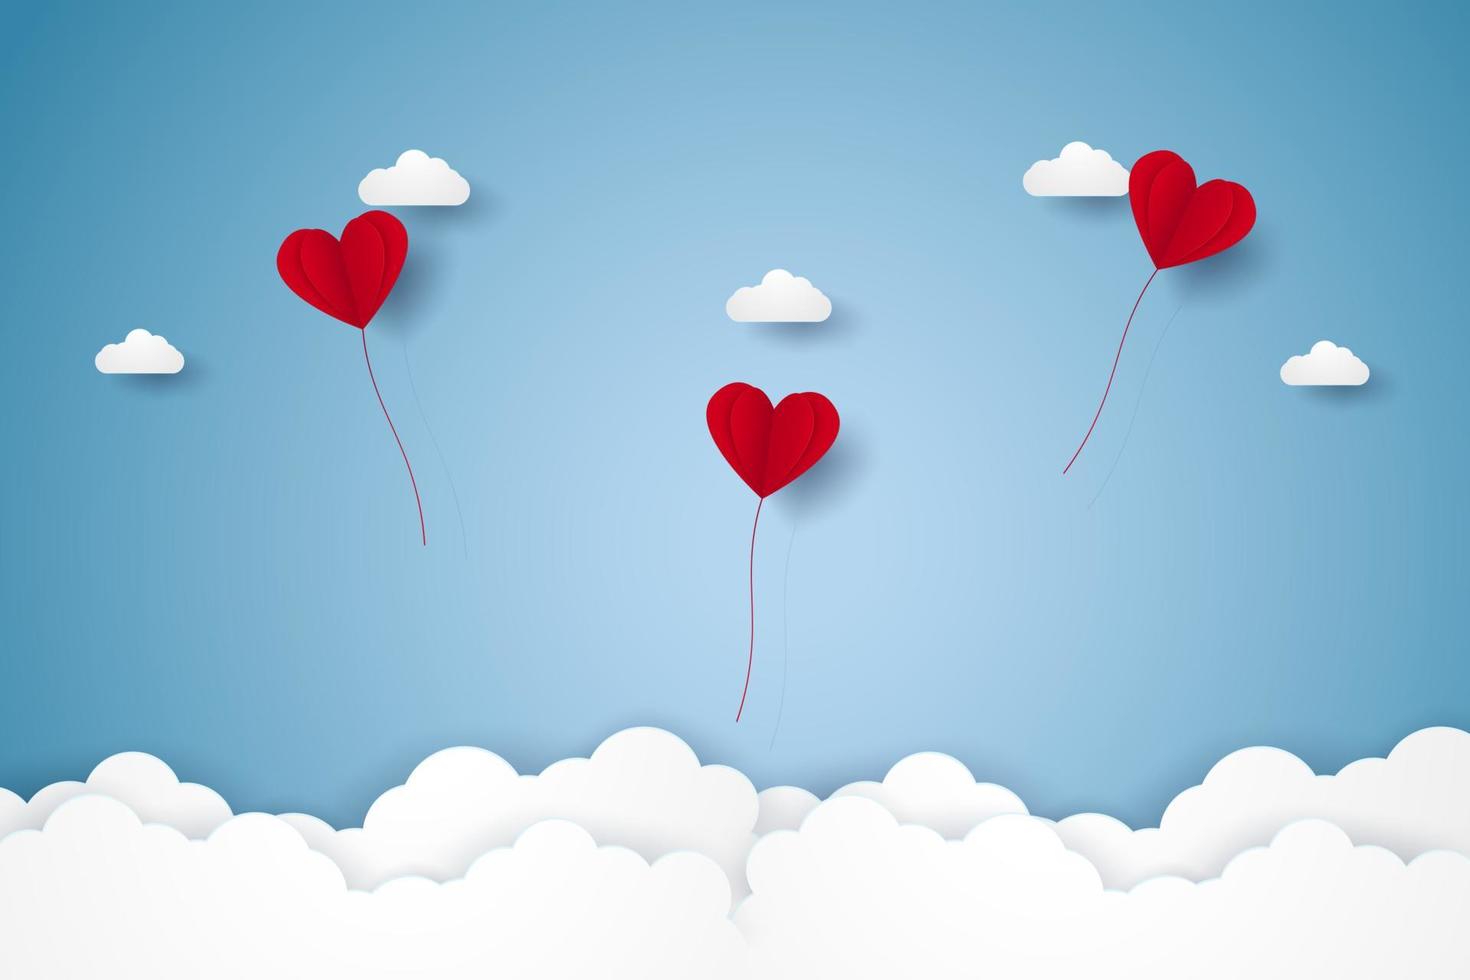 alla hjärtans dag, illustration av kärlek, röda hjärtballonger som flyger på himlen, papper konststil vektor